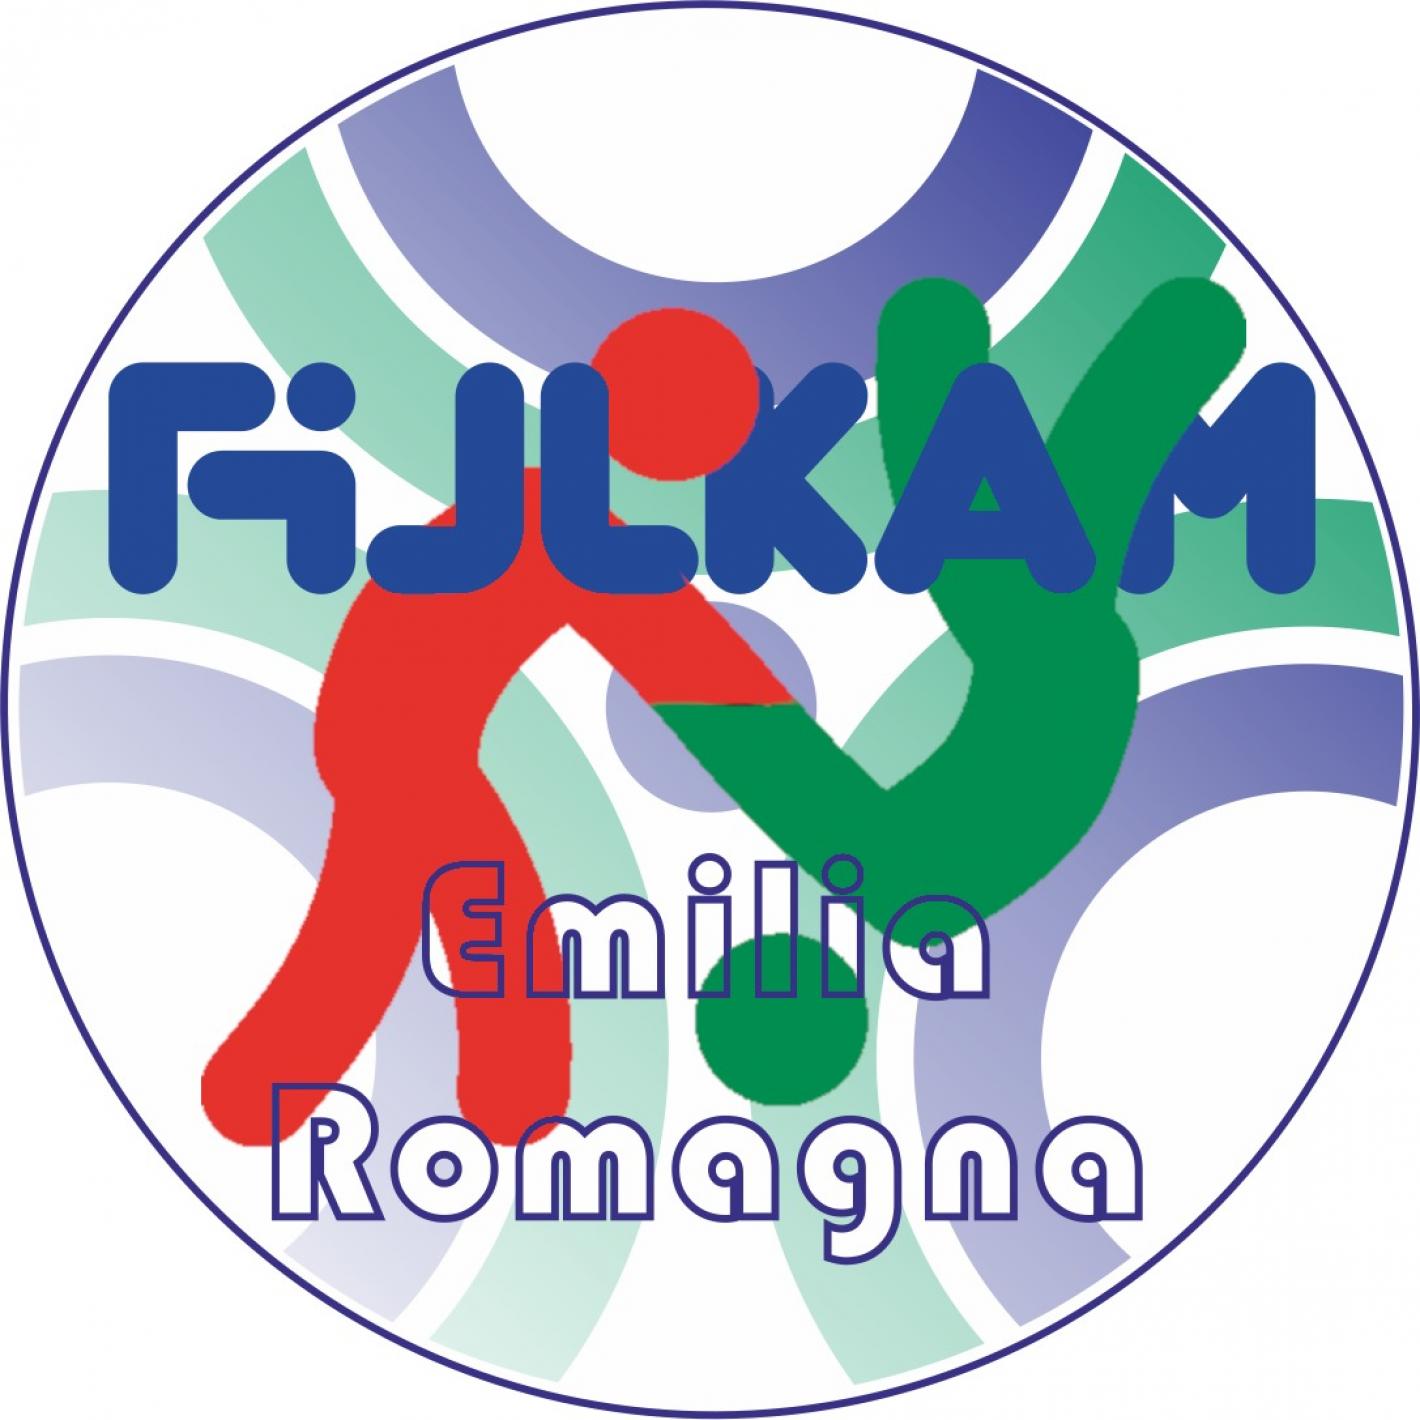 images/emilia_romagna/eventi/medium/Regione_Emilia_Romagna_2_FIJLKAM-judo.jpg